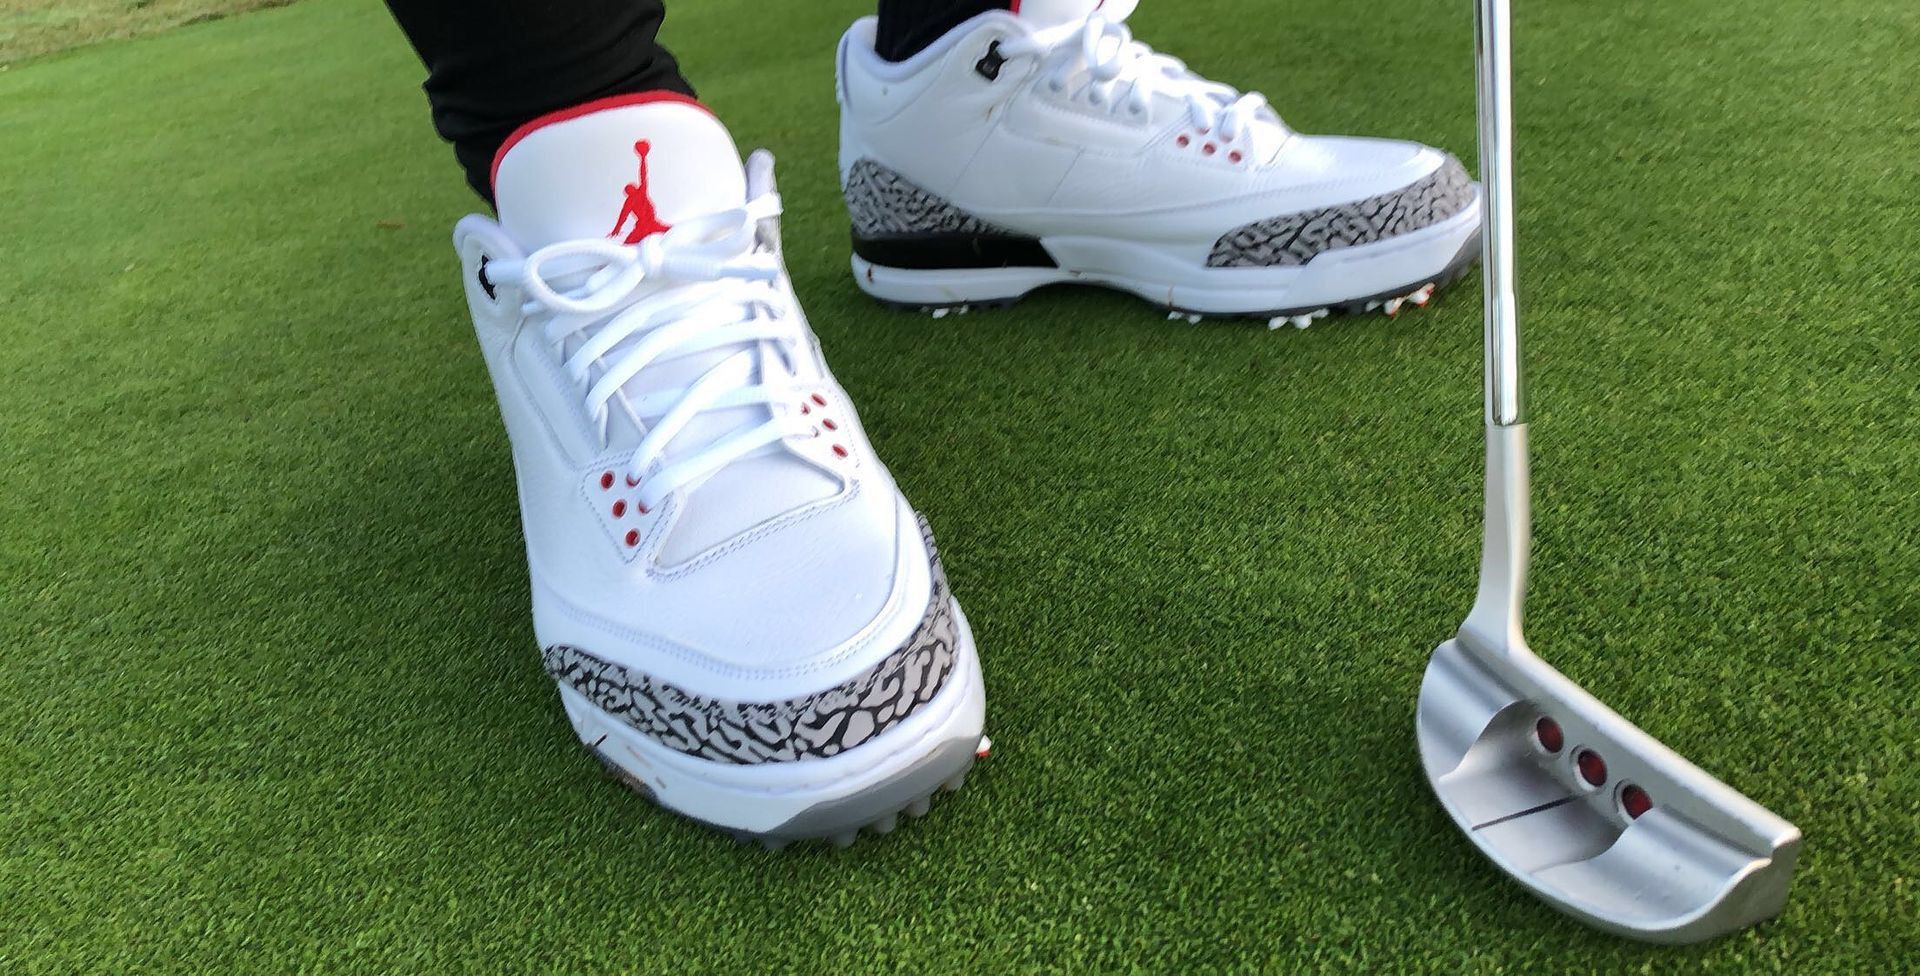 Air Jordan III Golf Shoes "White Cement" Feb 16th 2018